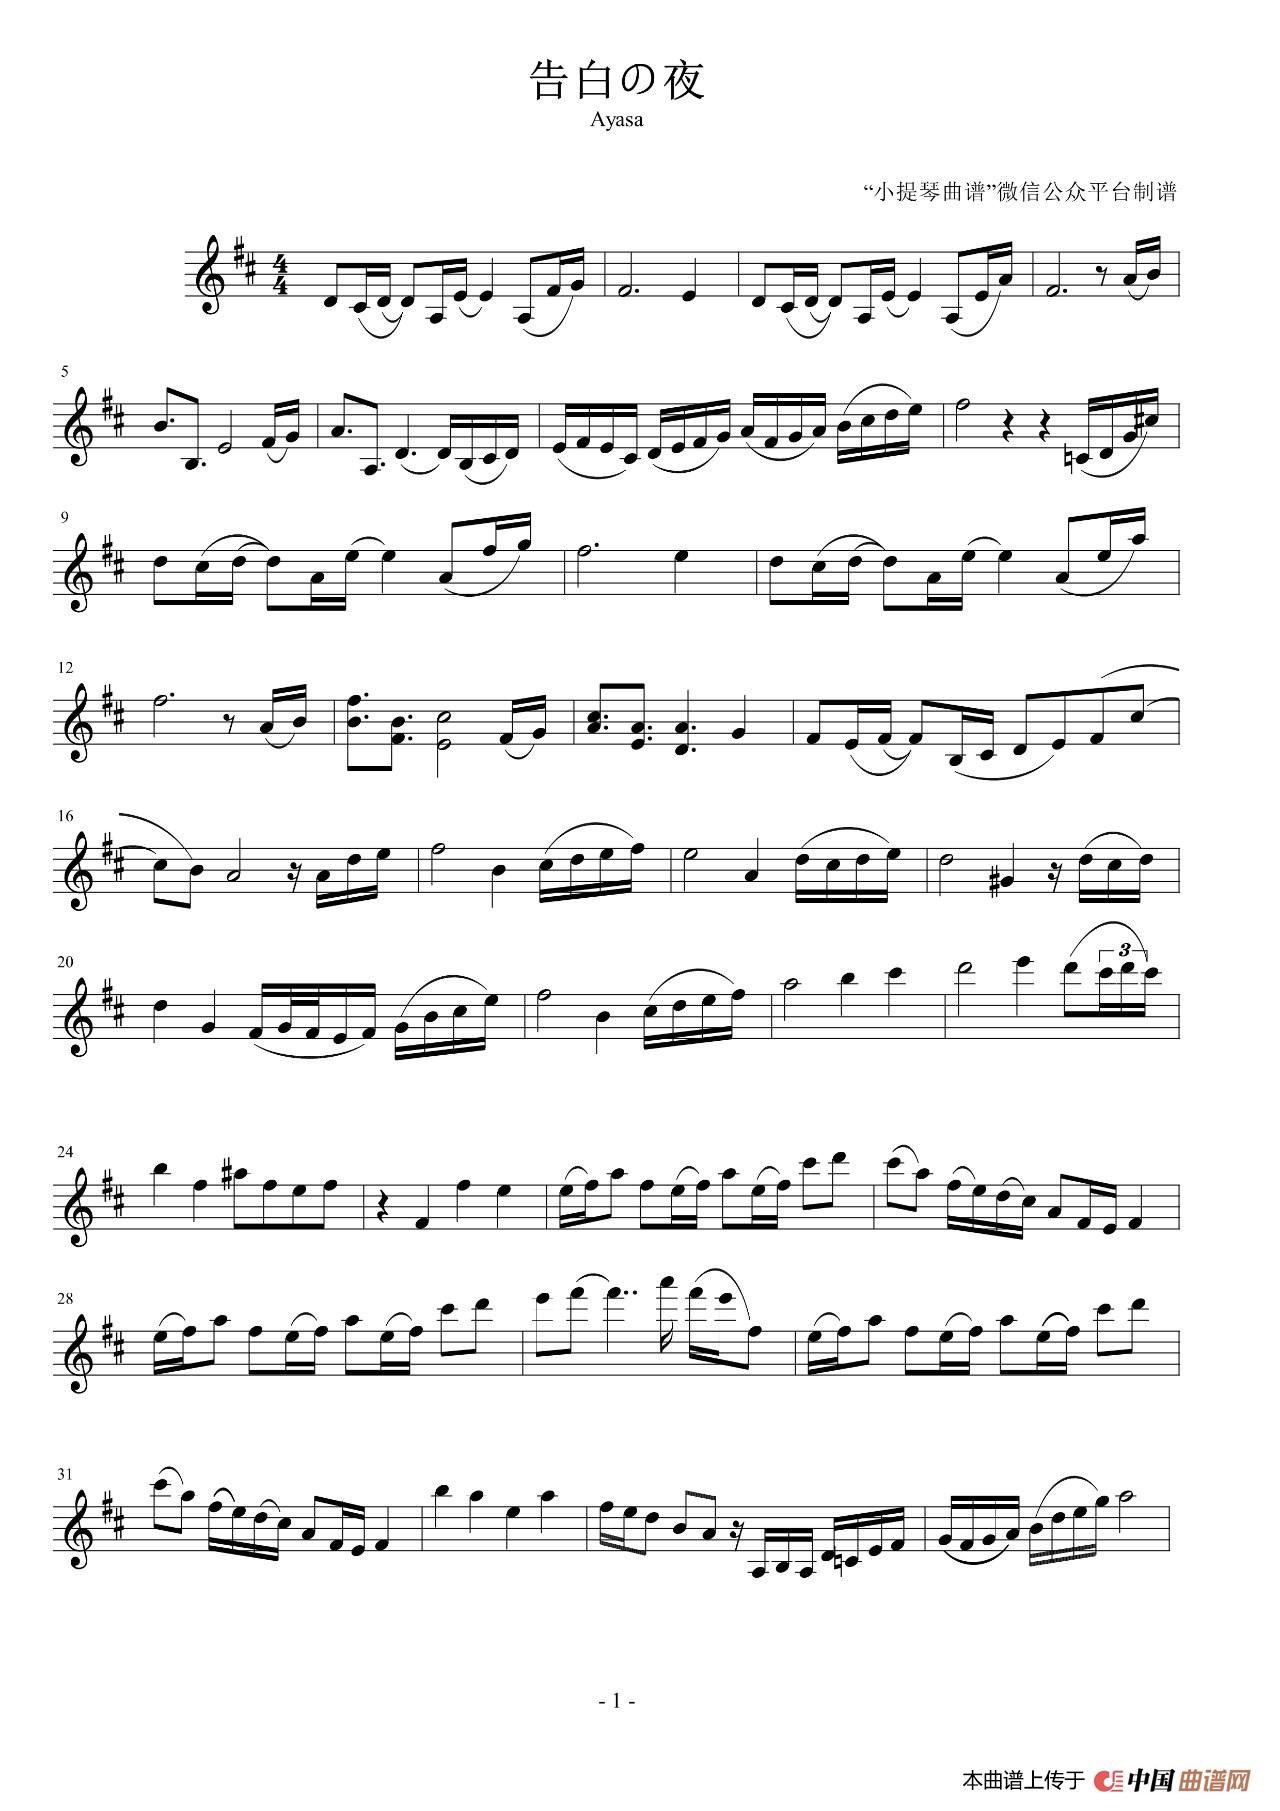 告白的夜小提琴谱（告白之夜小提琴谱）(1)_原文件名：1.jpg